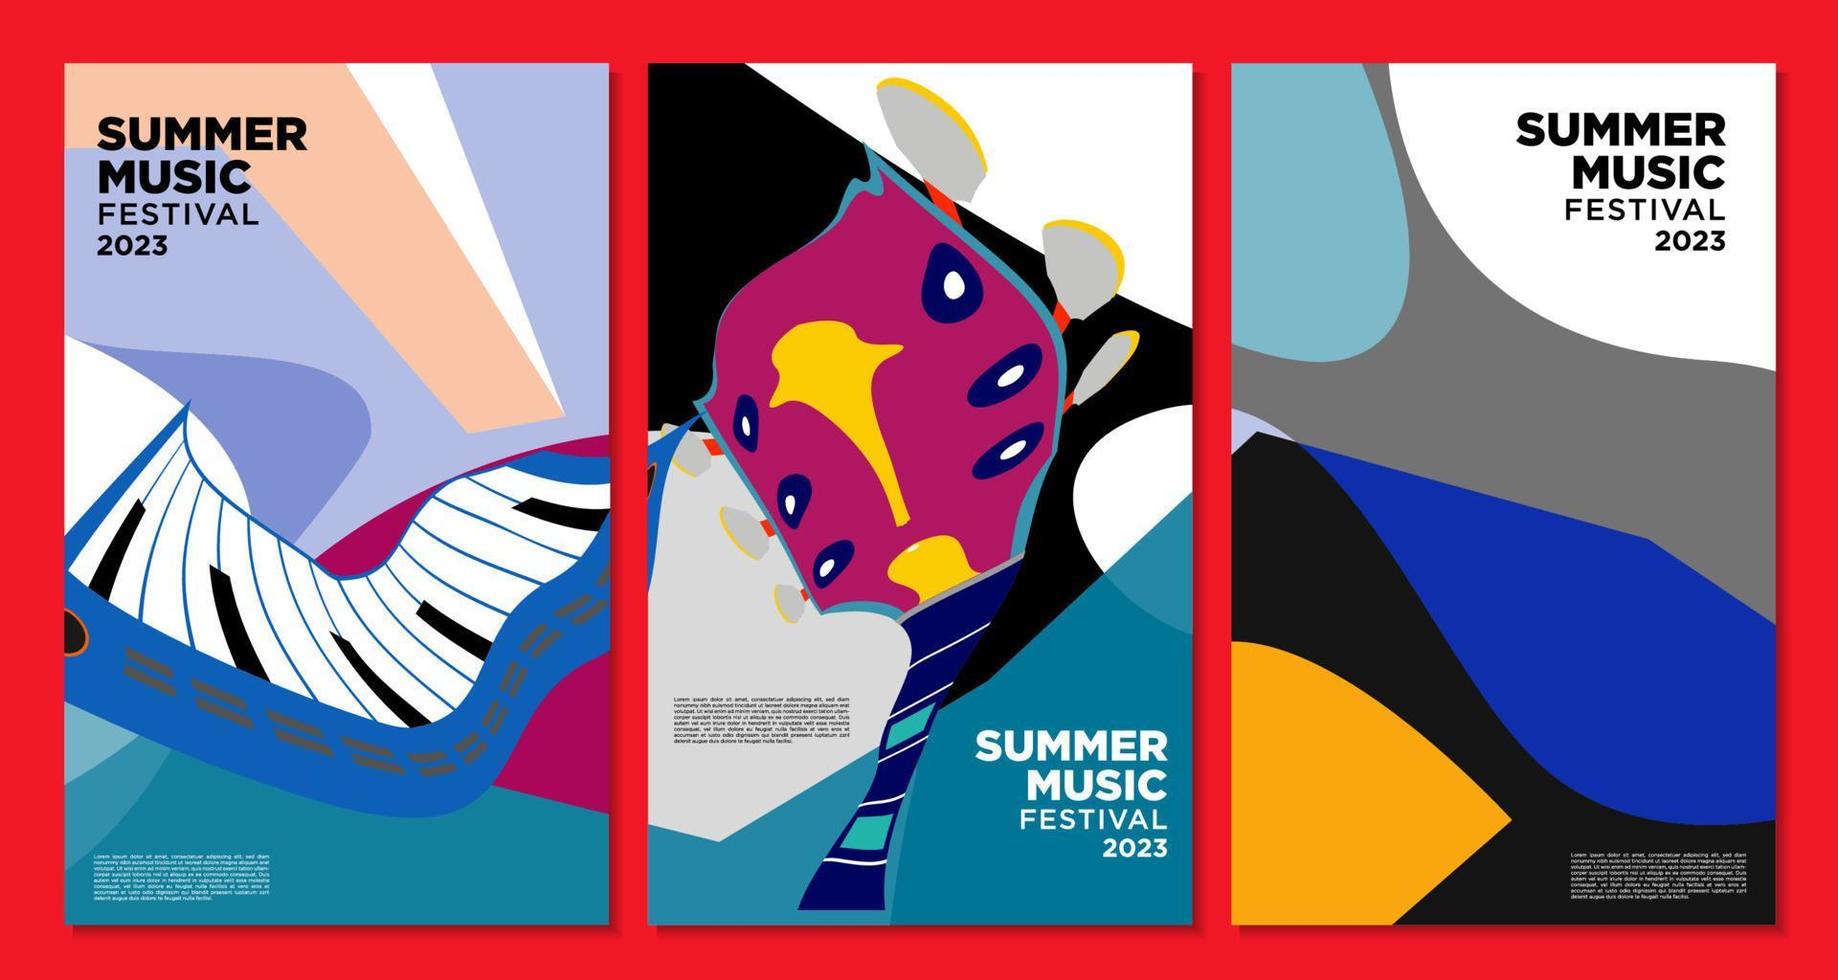 vektor illustration färgglada sommar musik festival banner